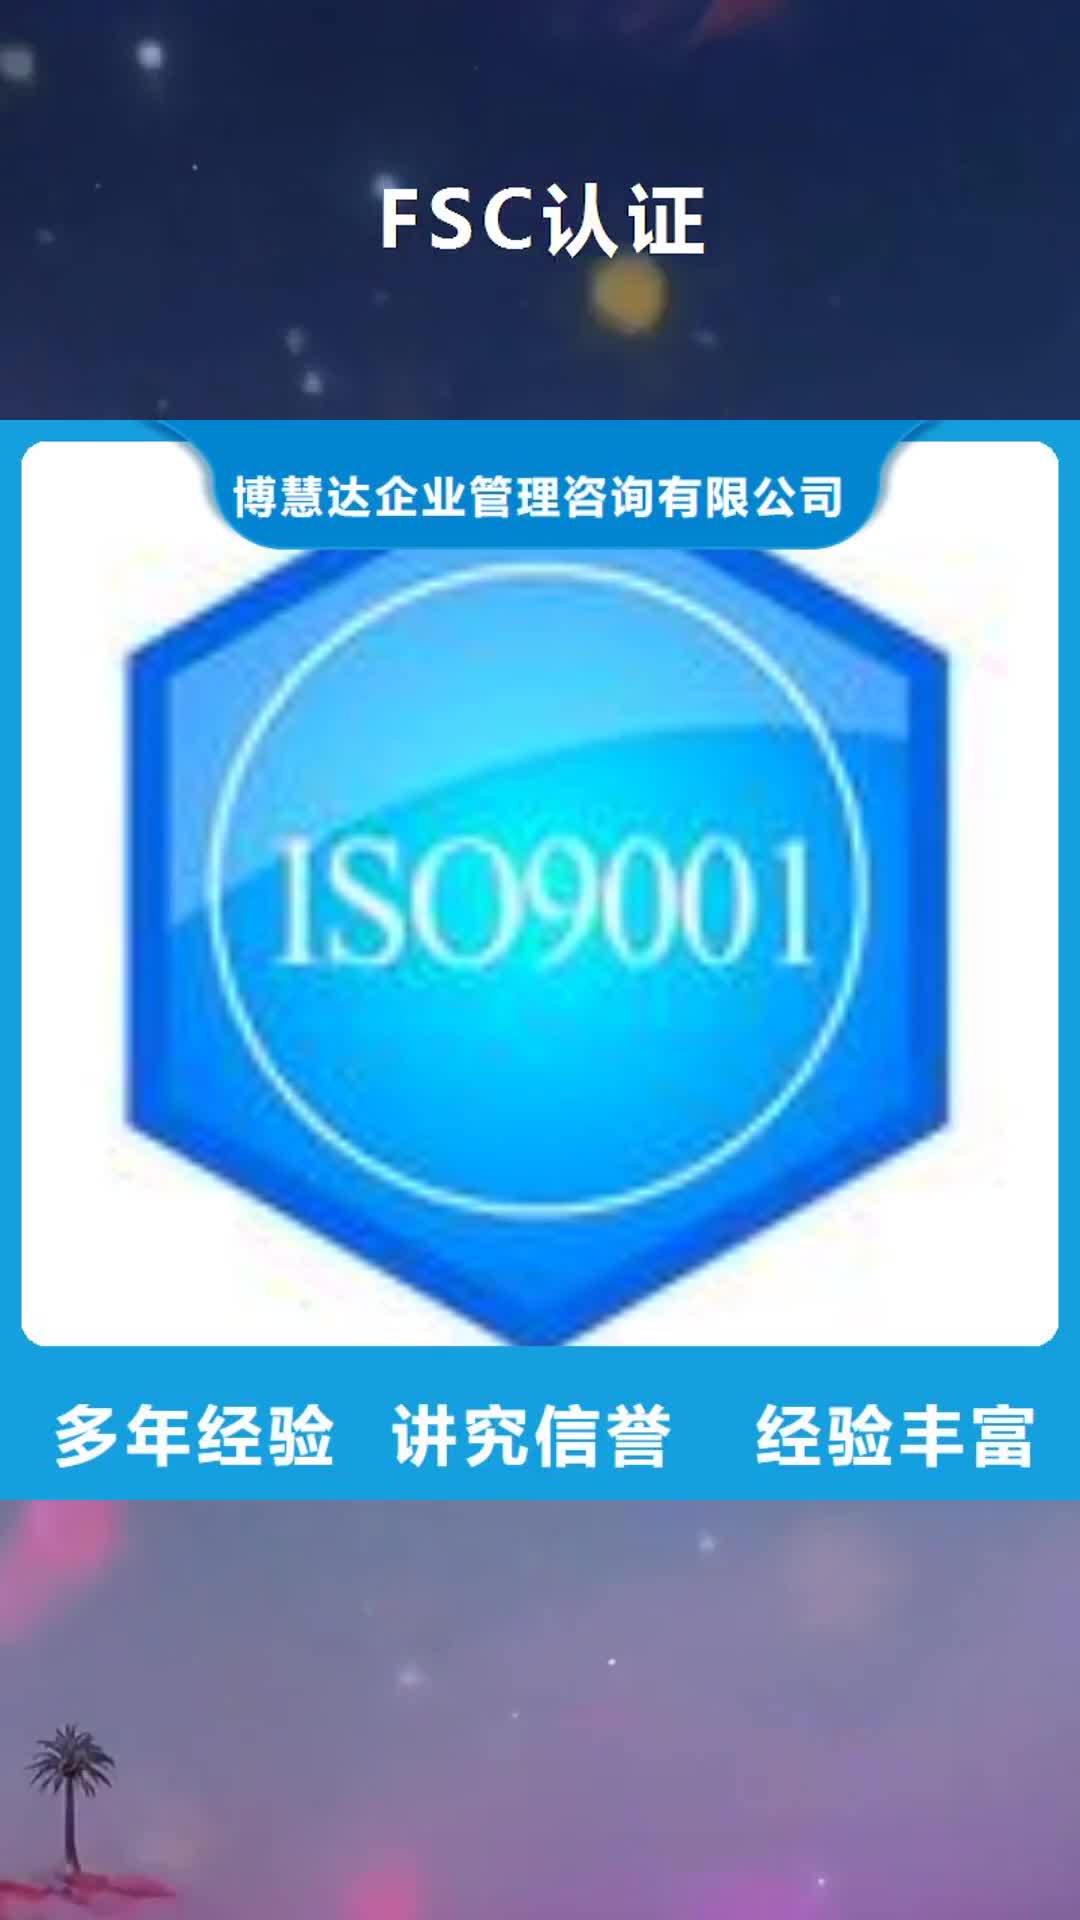 内蒙古【FSC认证】,ISO14000\ESD防静电认证优质服务